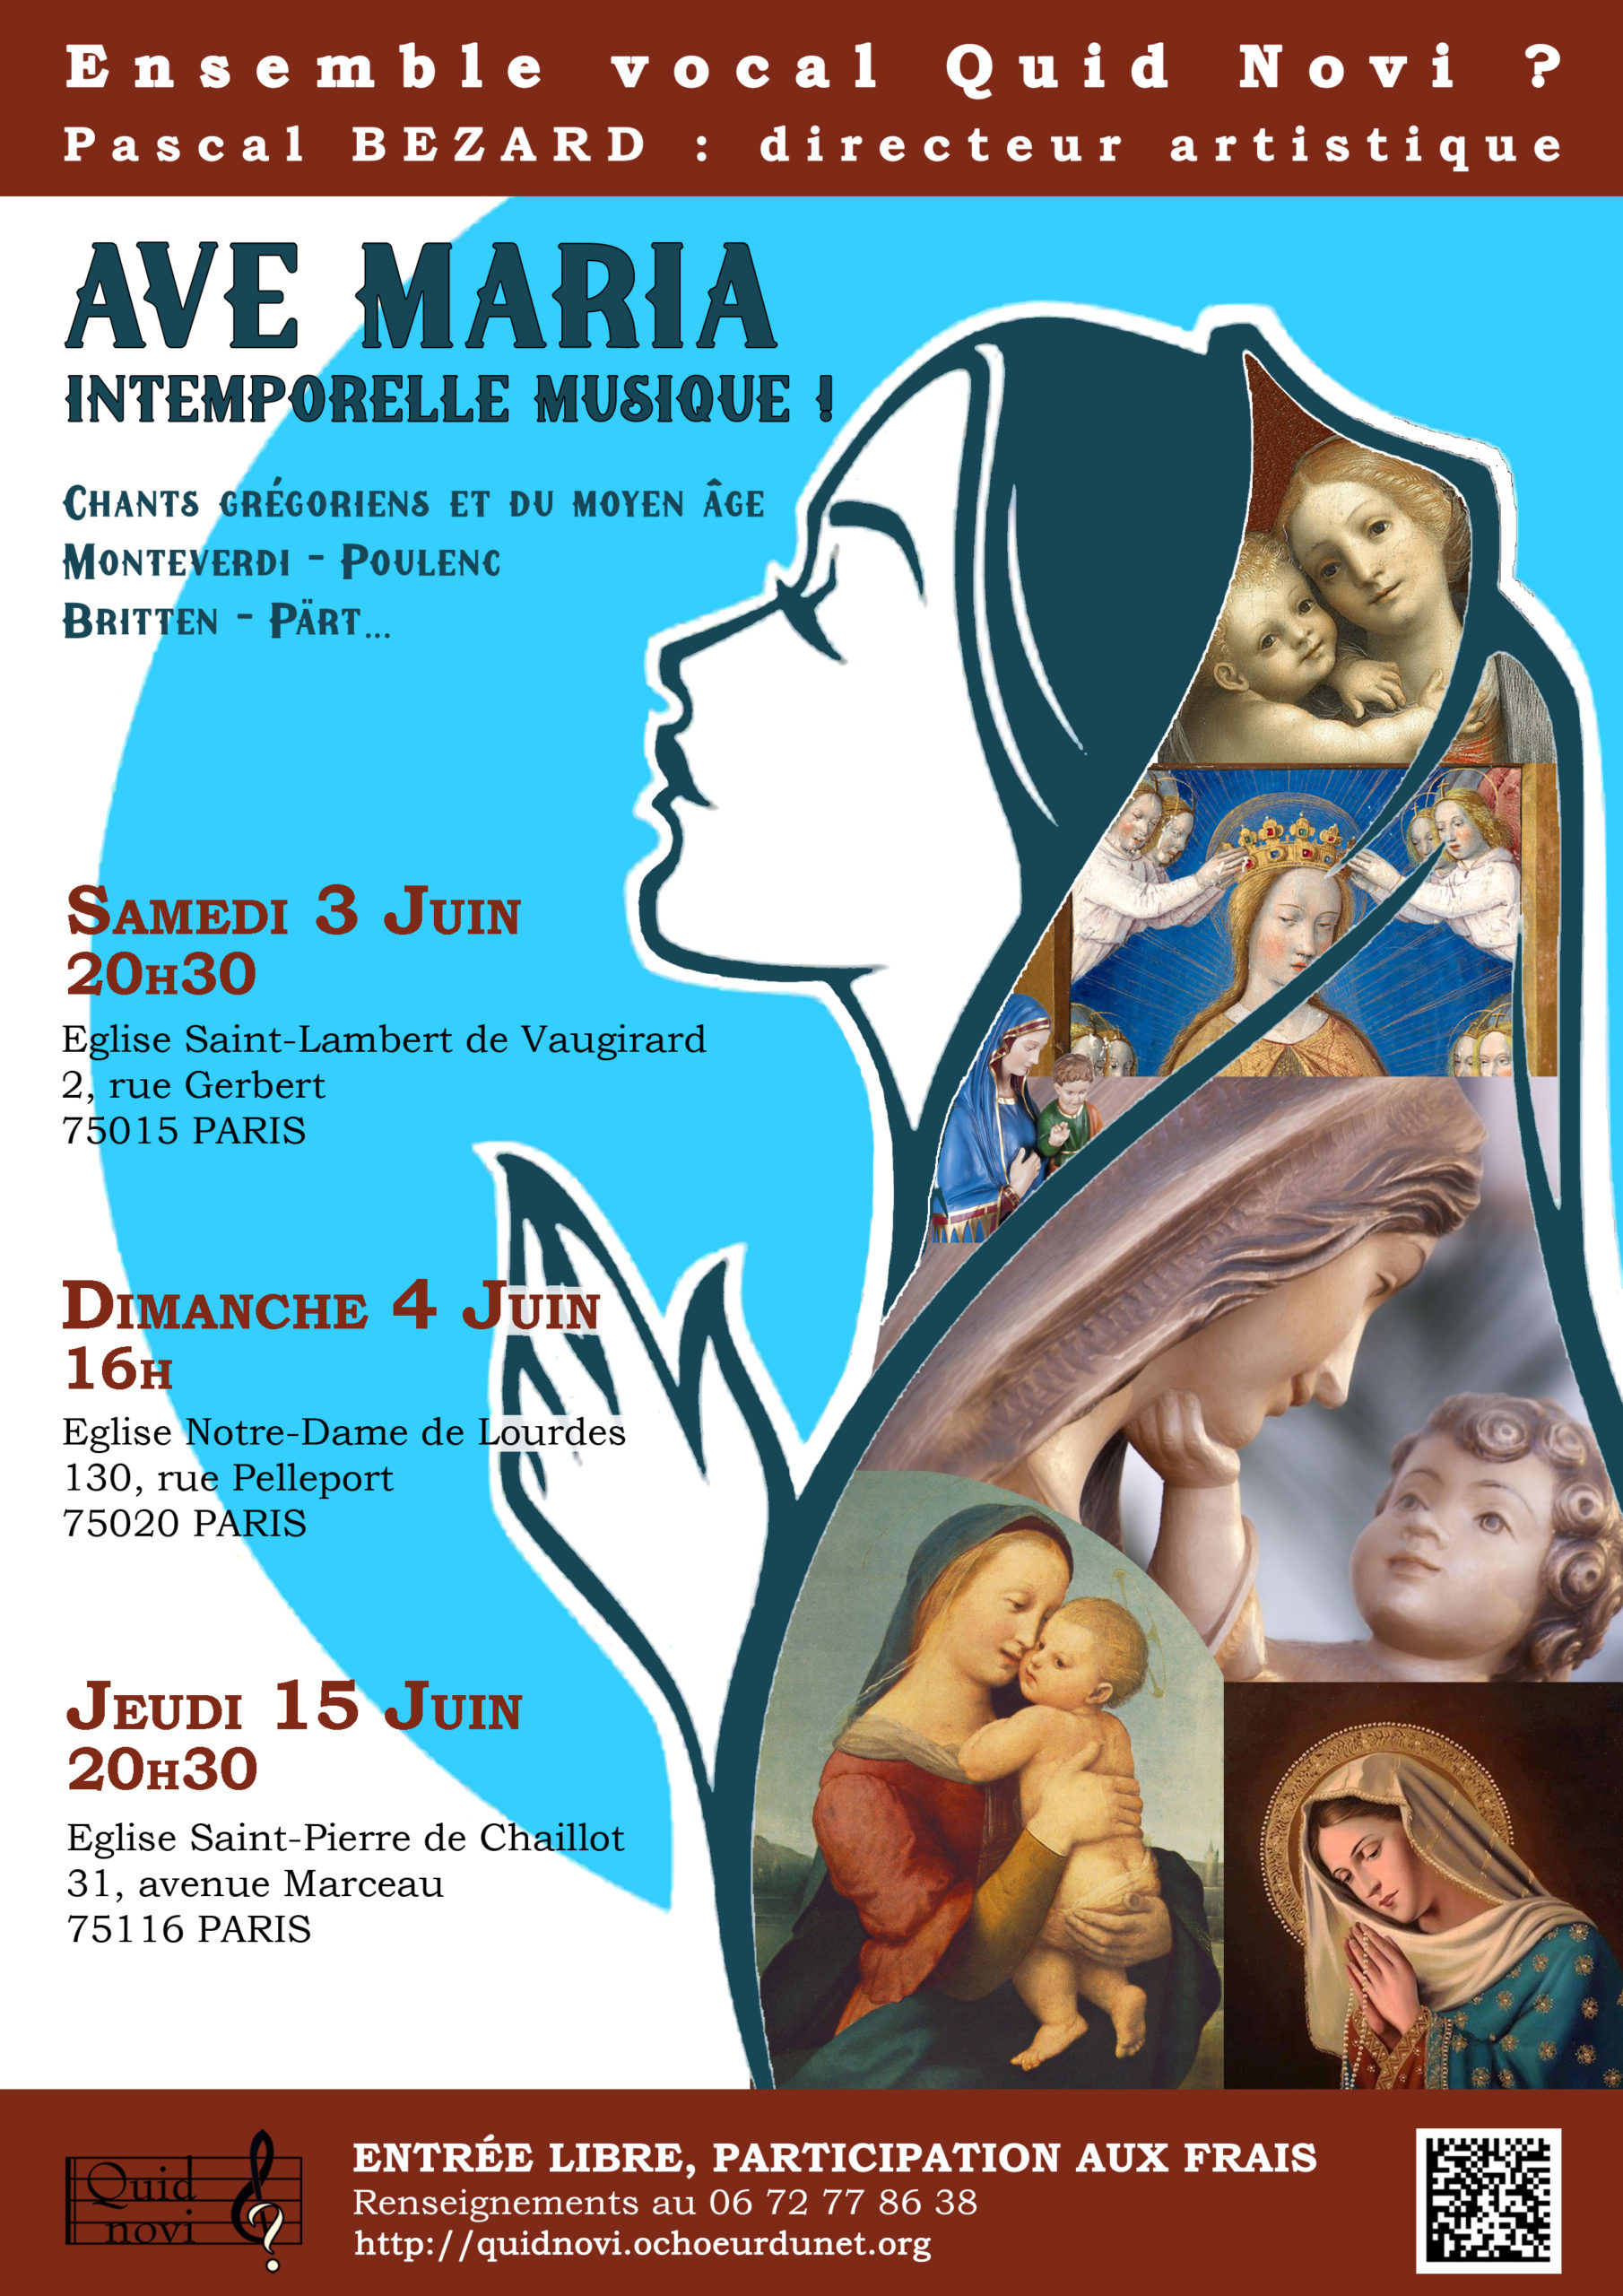 Ave Maria Intemporelle Musique à Notre Dame de Lourdes